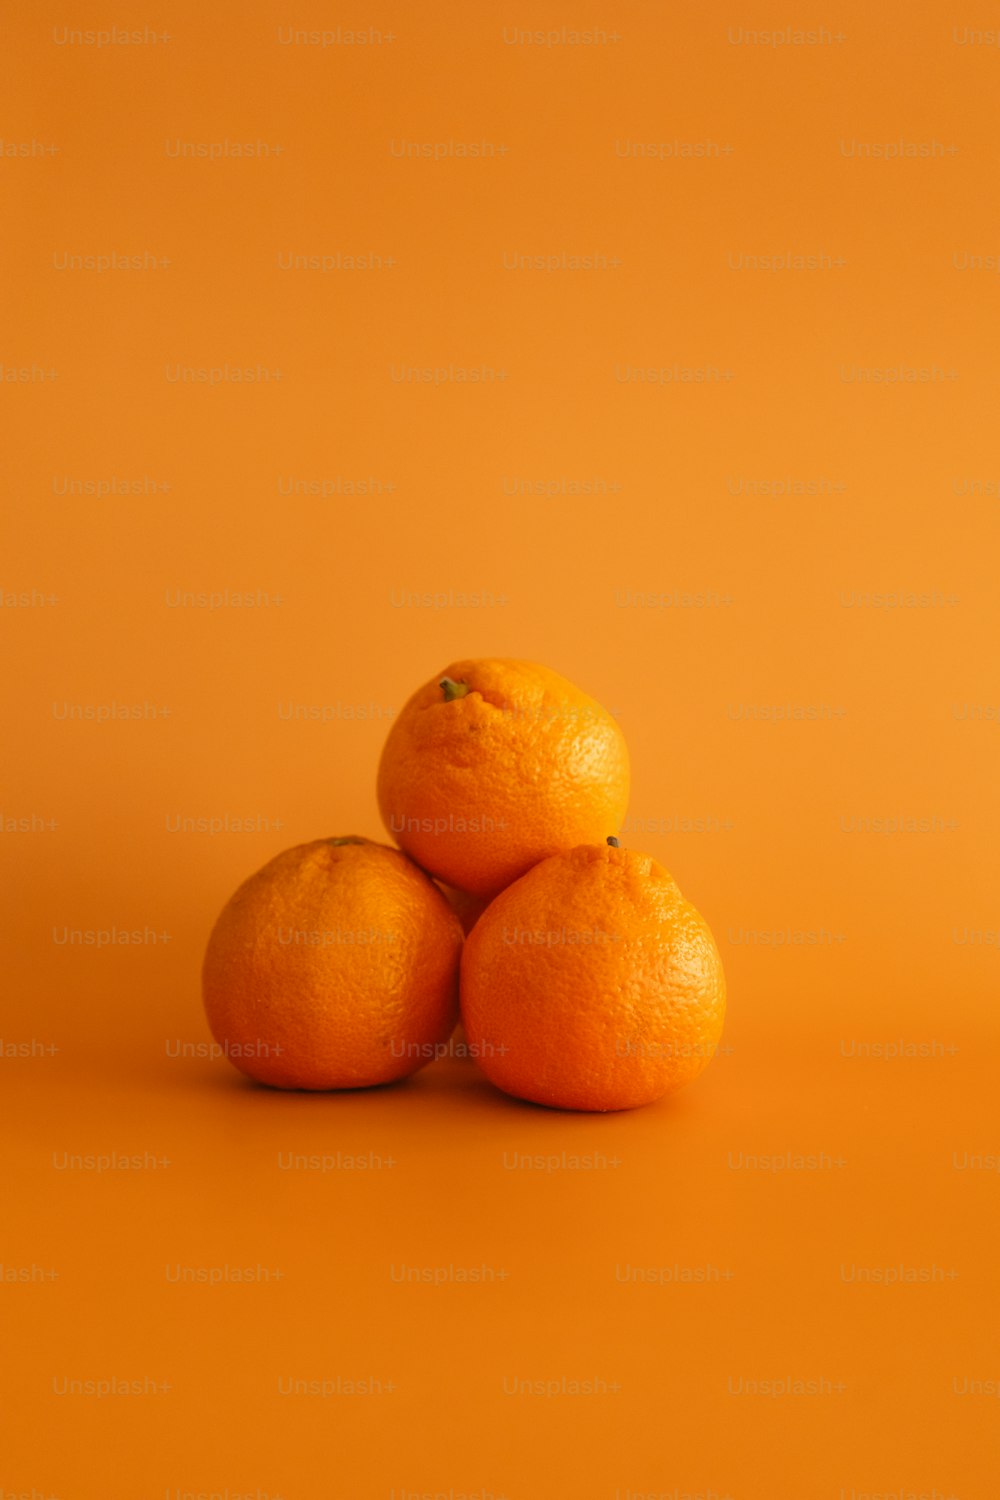 3つのオレンジが重なり合って座っている